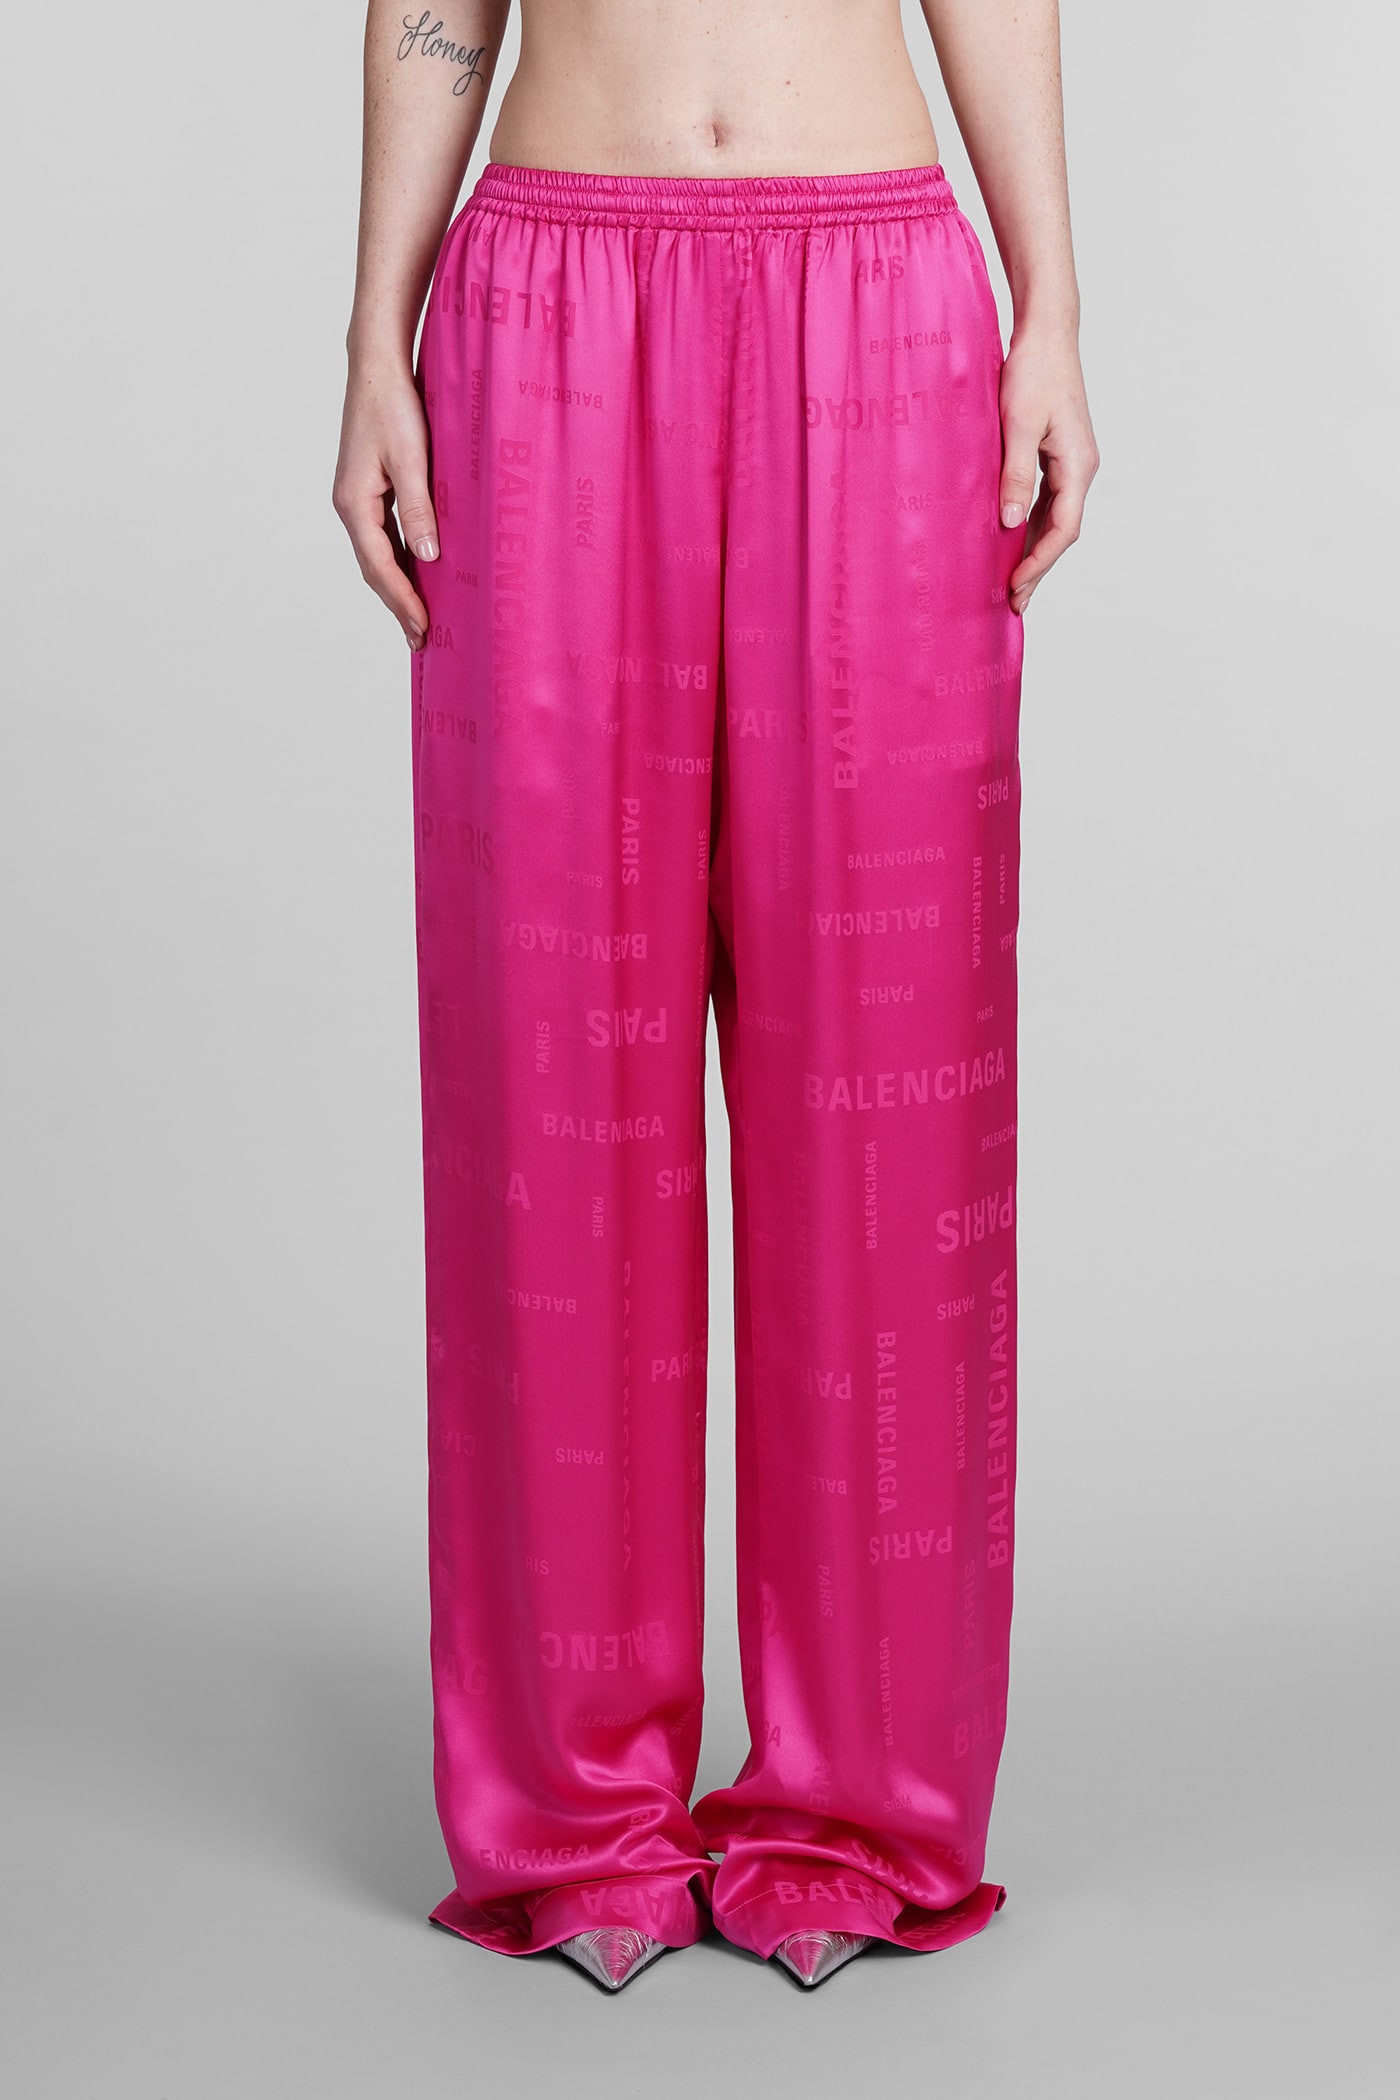 Balenciaga Pants In Fuxia Silk